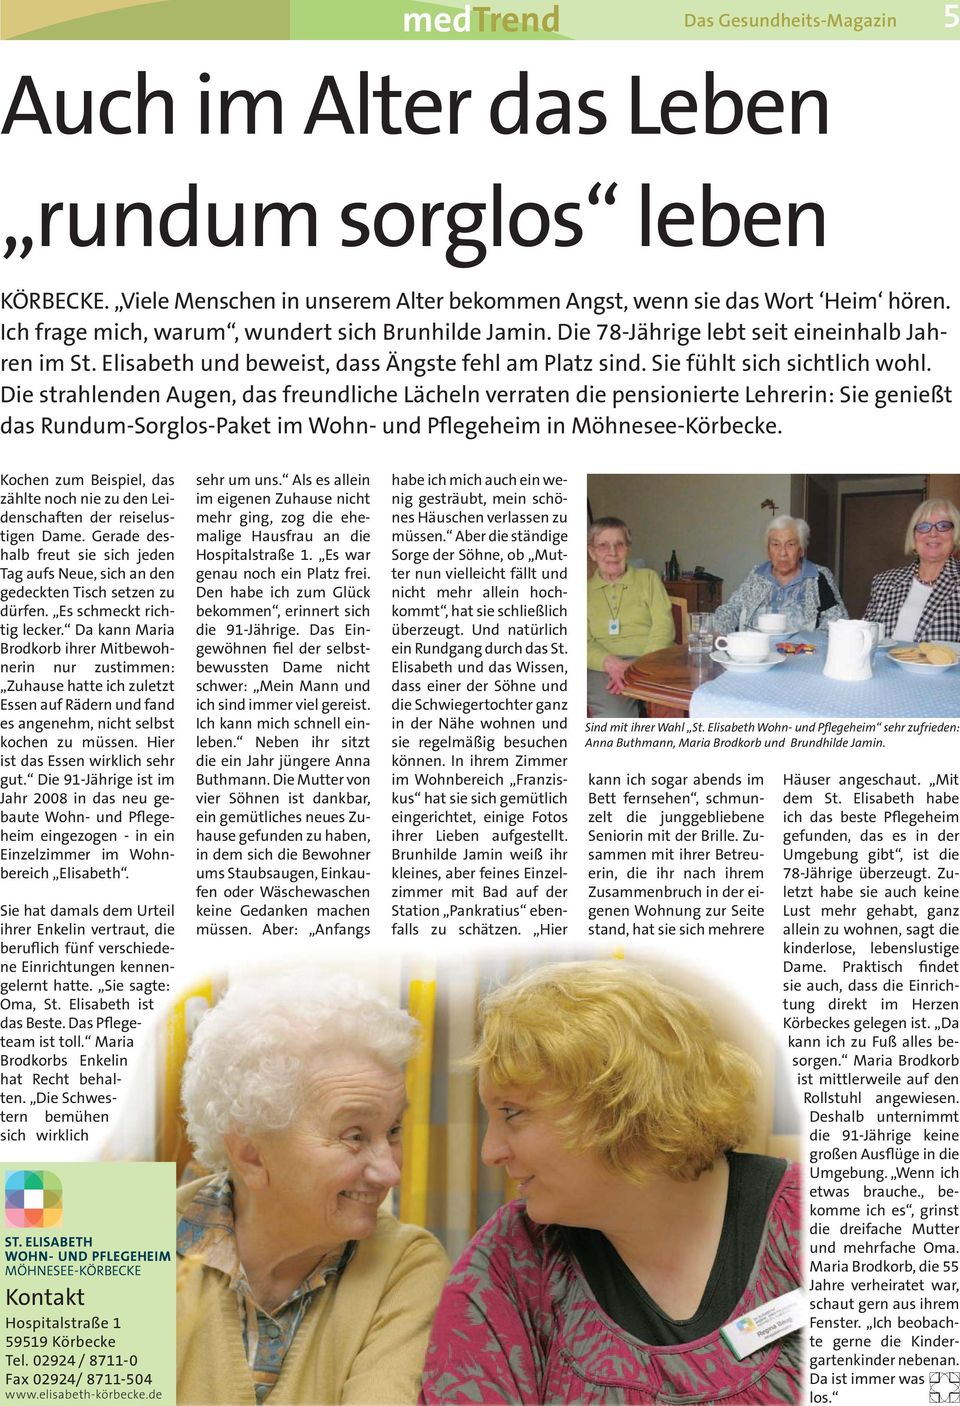 Die strahlenden Augen, das freundliche Lächeln verraten die pensionierte Lehrerin: Sie genießt das Rundum-Sorglos-Paket im Wohn- und Pflegeheim in Möhnesee-Körbecke.